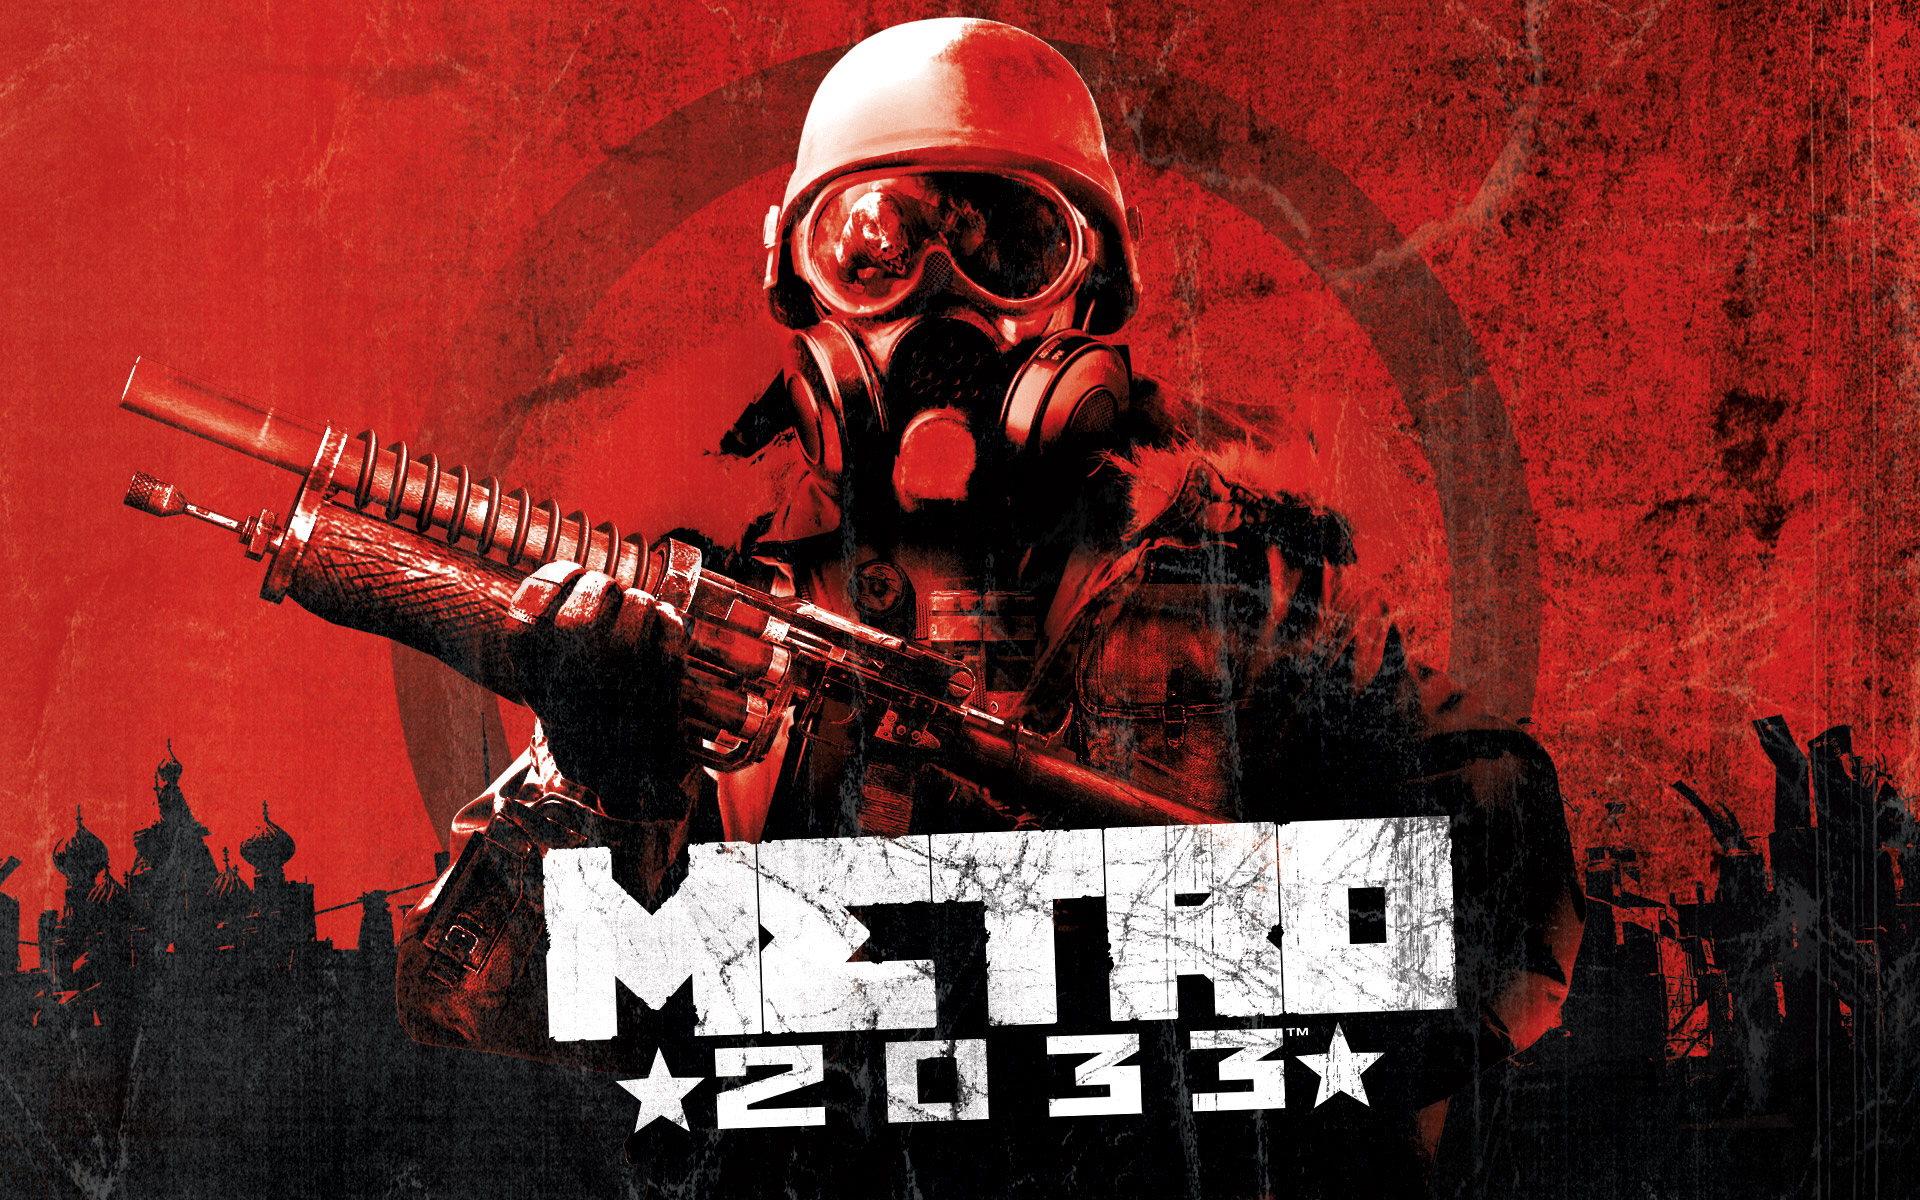 Metro 2033 - Redux Achievements sẽ đưa bạn đến với thế giới game Metro đầy thử thách và chiến thắng. Với danh sách các cột mốc đạt được trong game, bạn sẽ luôn có động lực để cố gắng vượt qua các thử thách và hoàn thành game. Đừng bỏ lỡ cơ hội khám phá!